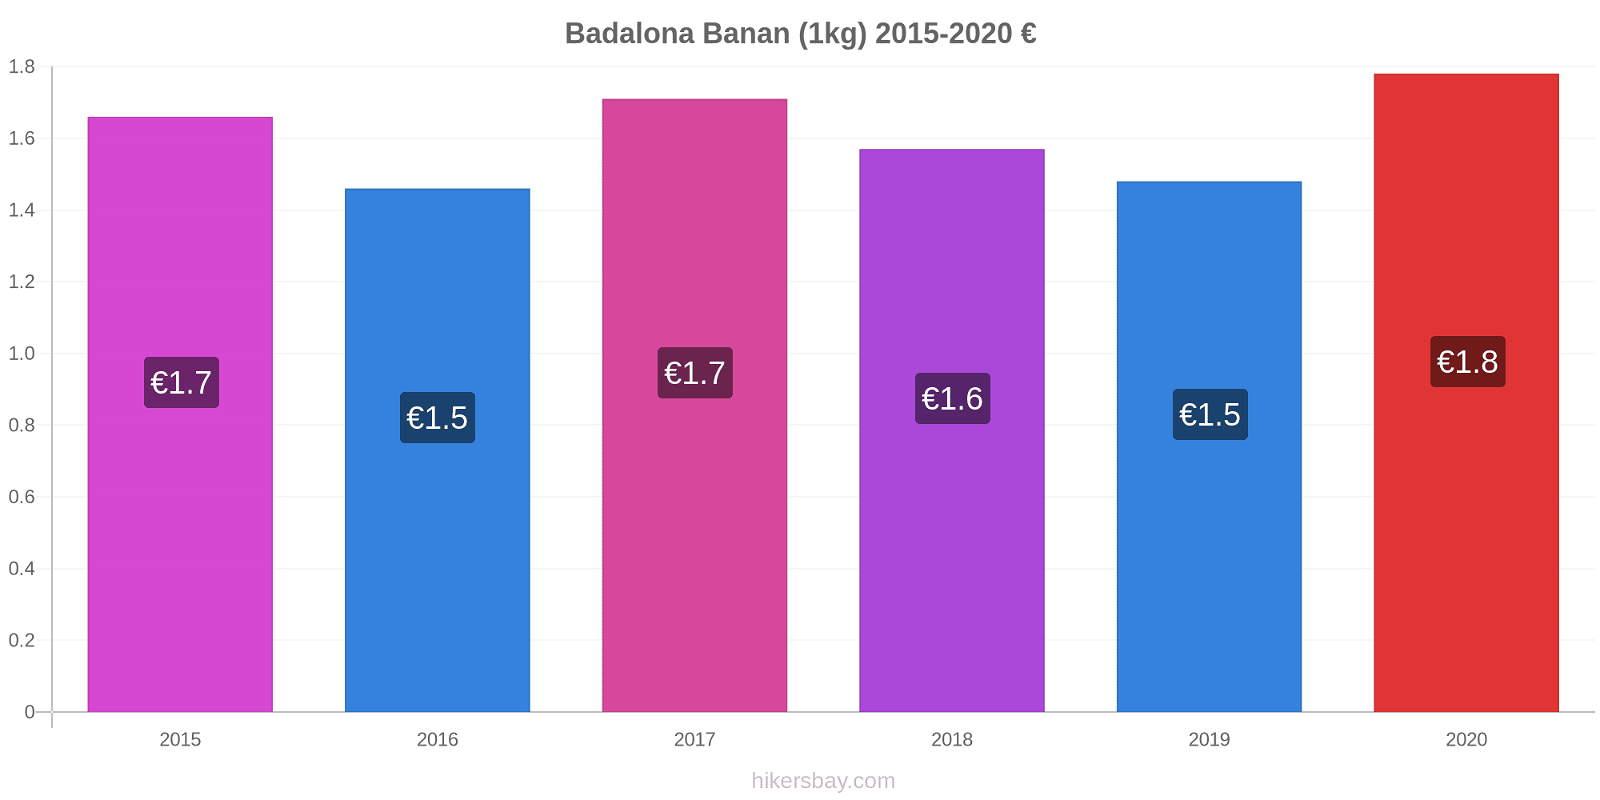 Badalona prisendringer Banan (1kg) hikersbay.com